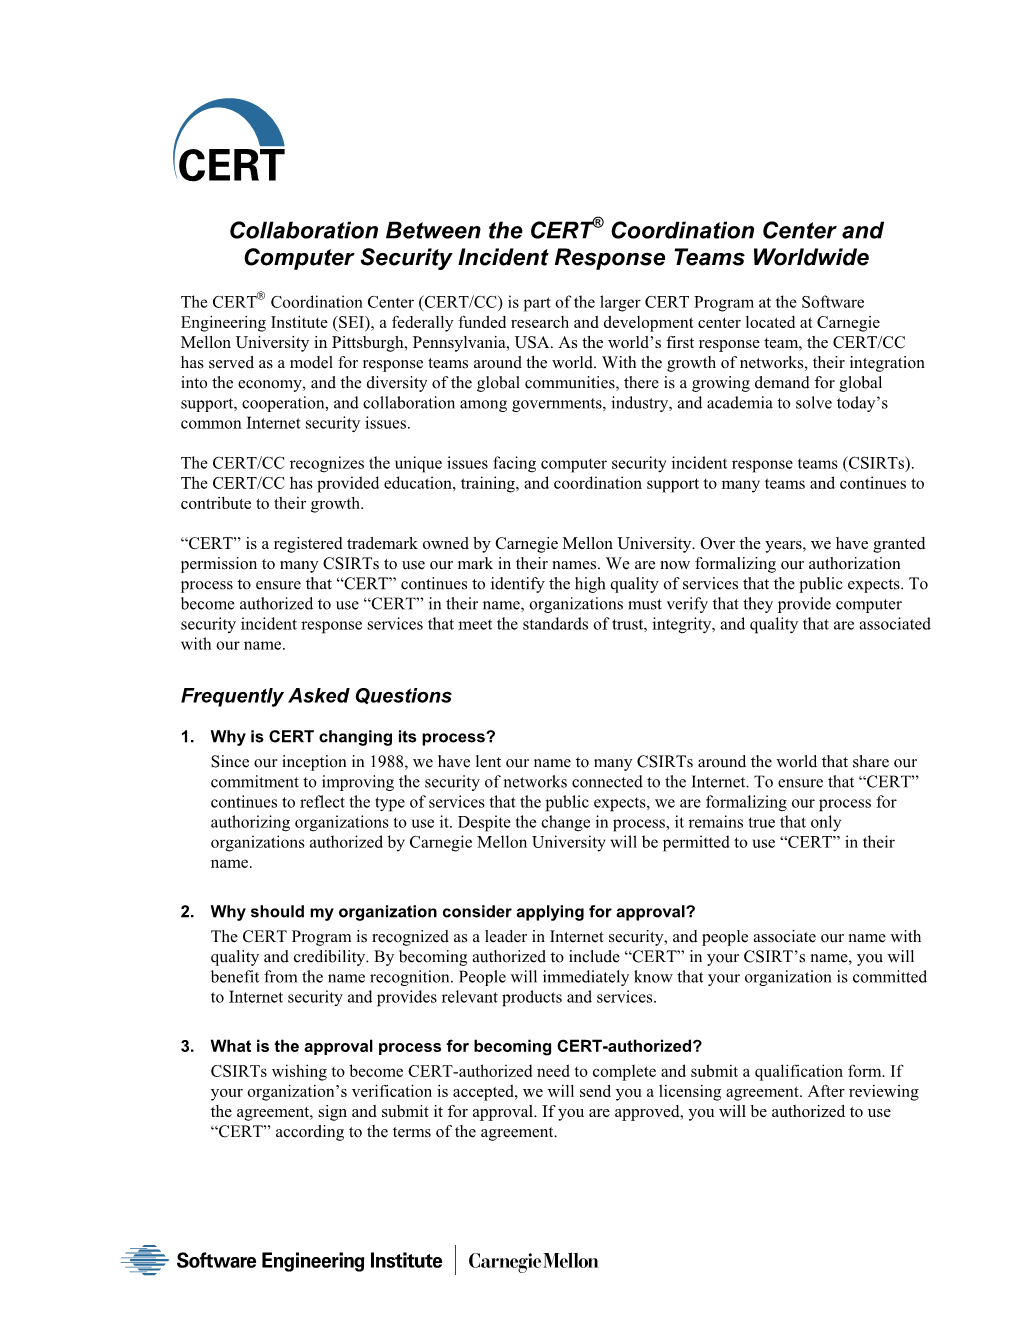 FAQ: Collaboration Between the CERT